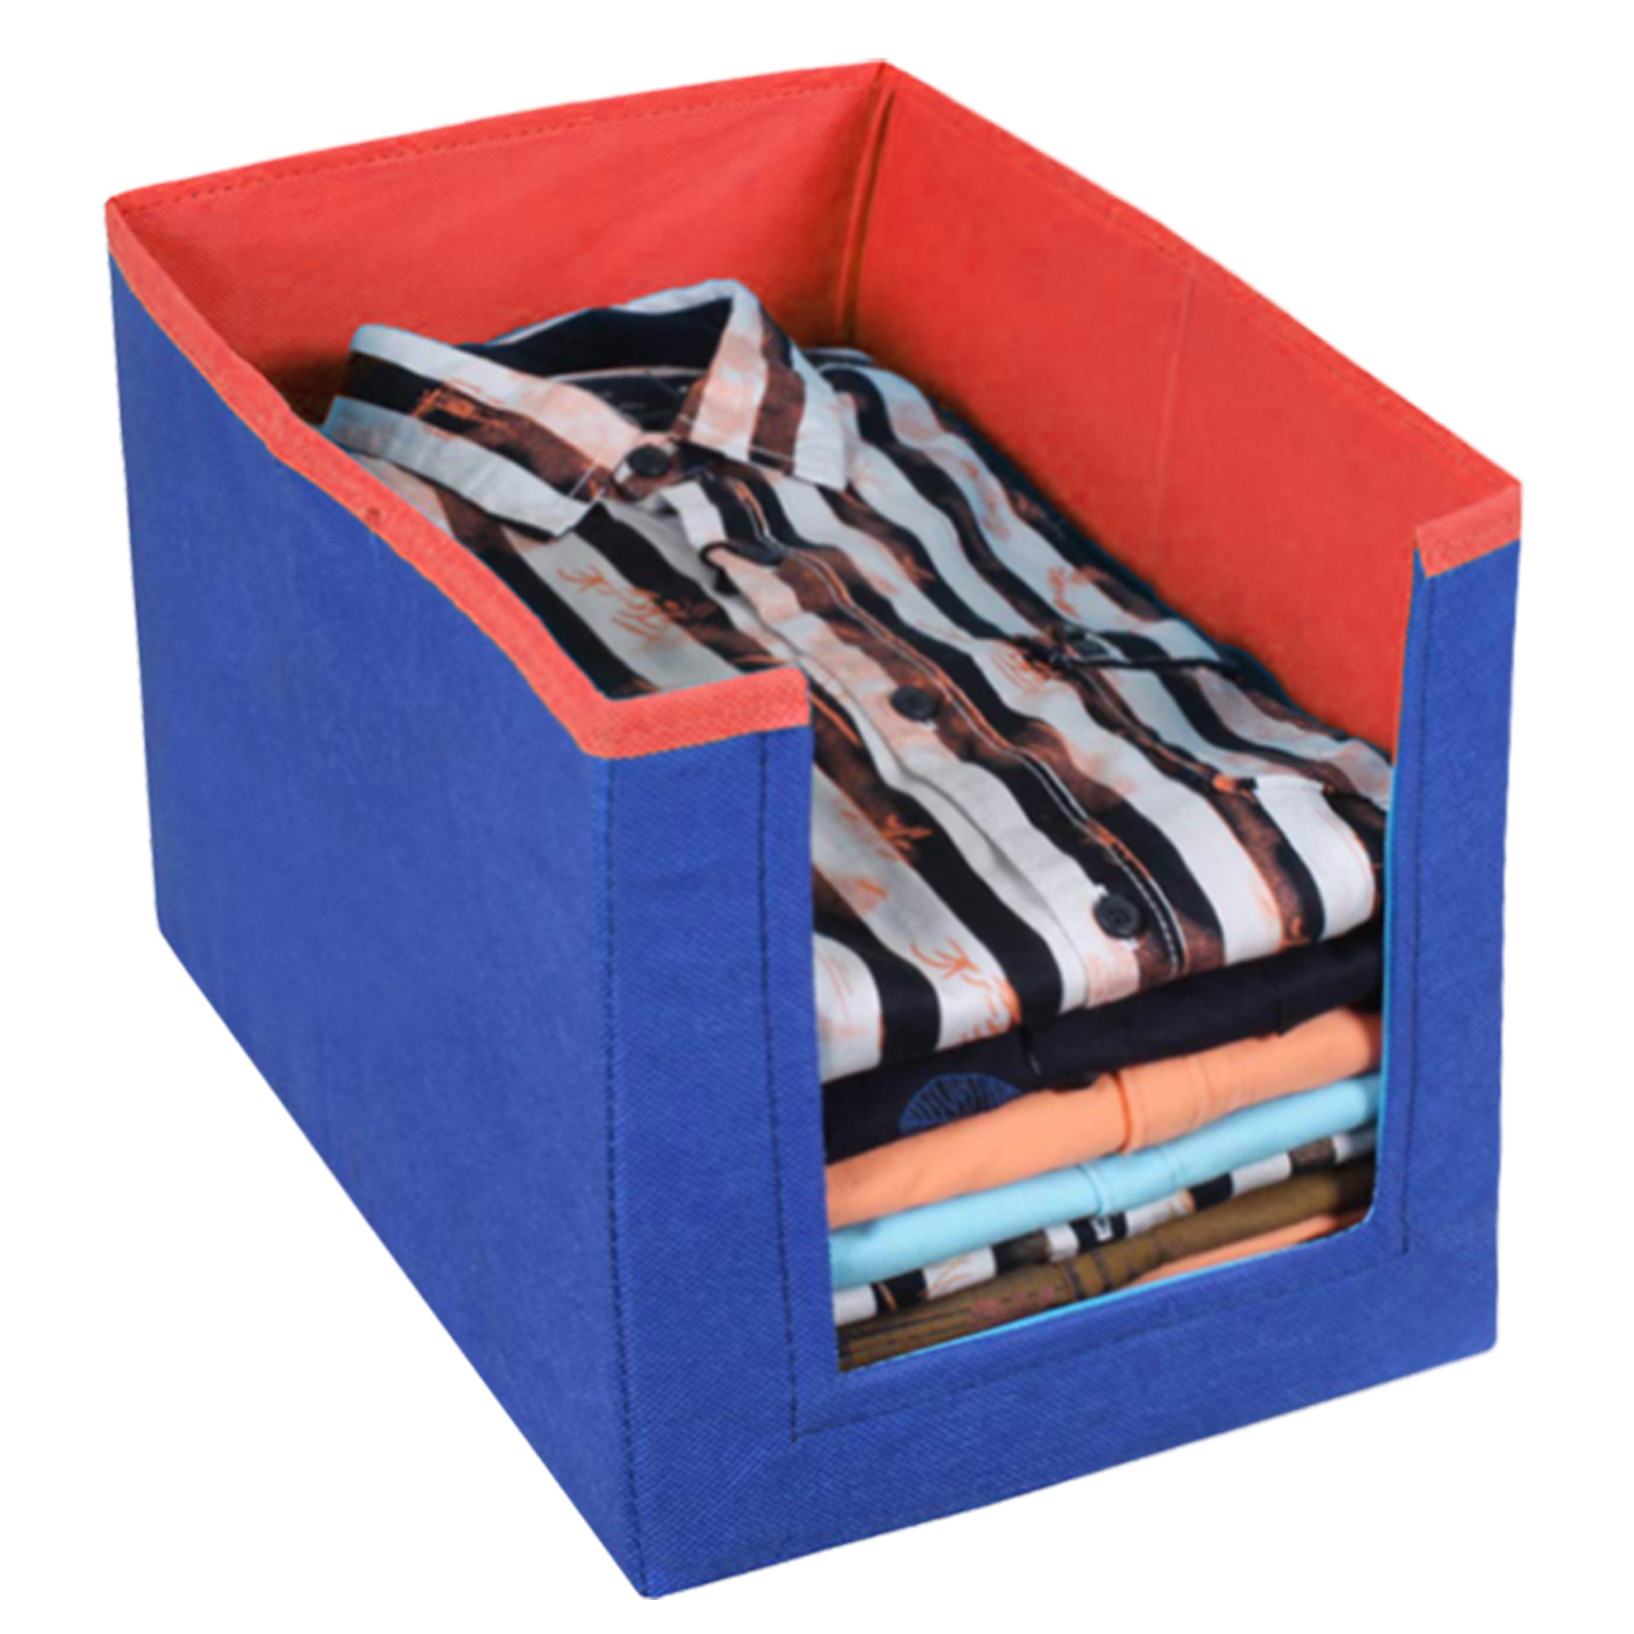 Kuber Industries Non Woven Wardrobe Cloths Organizer-Shirt Stacker Storage Box (Grey & Brown & Blue)